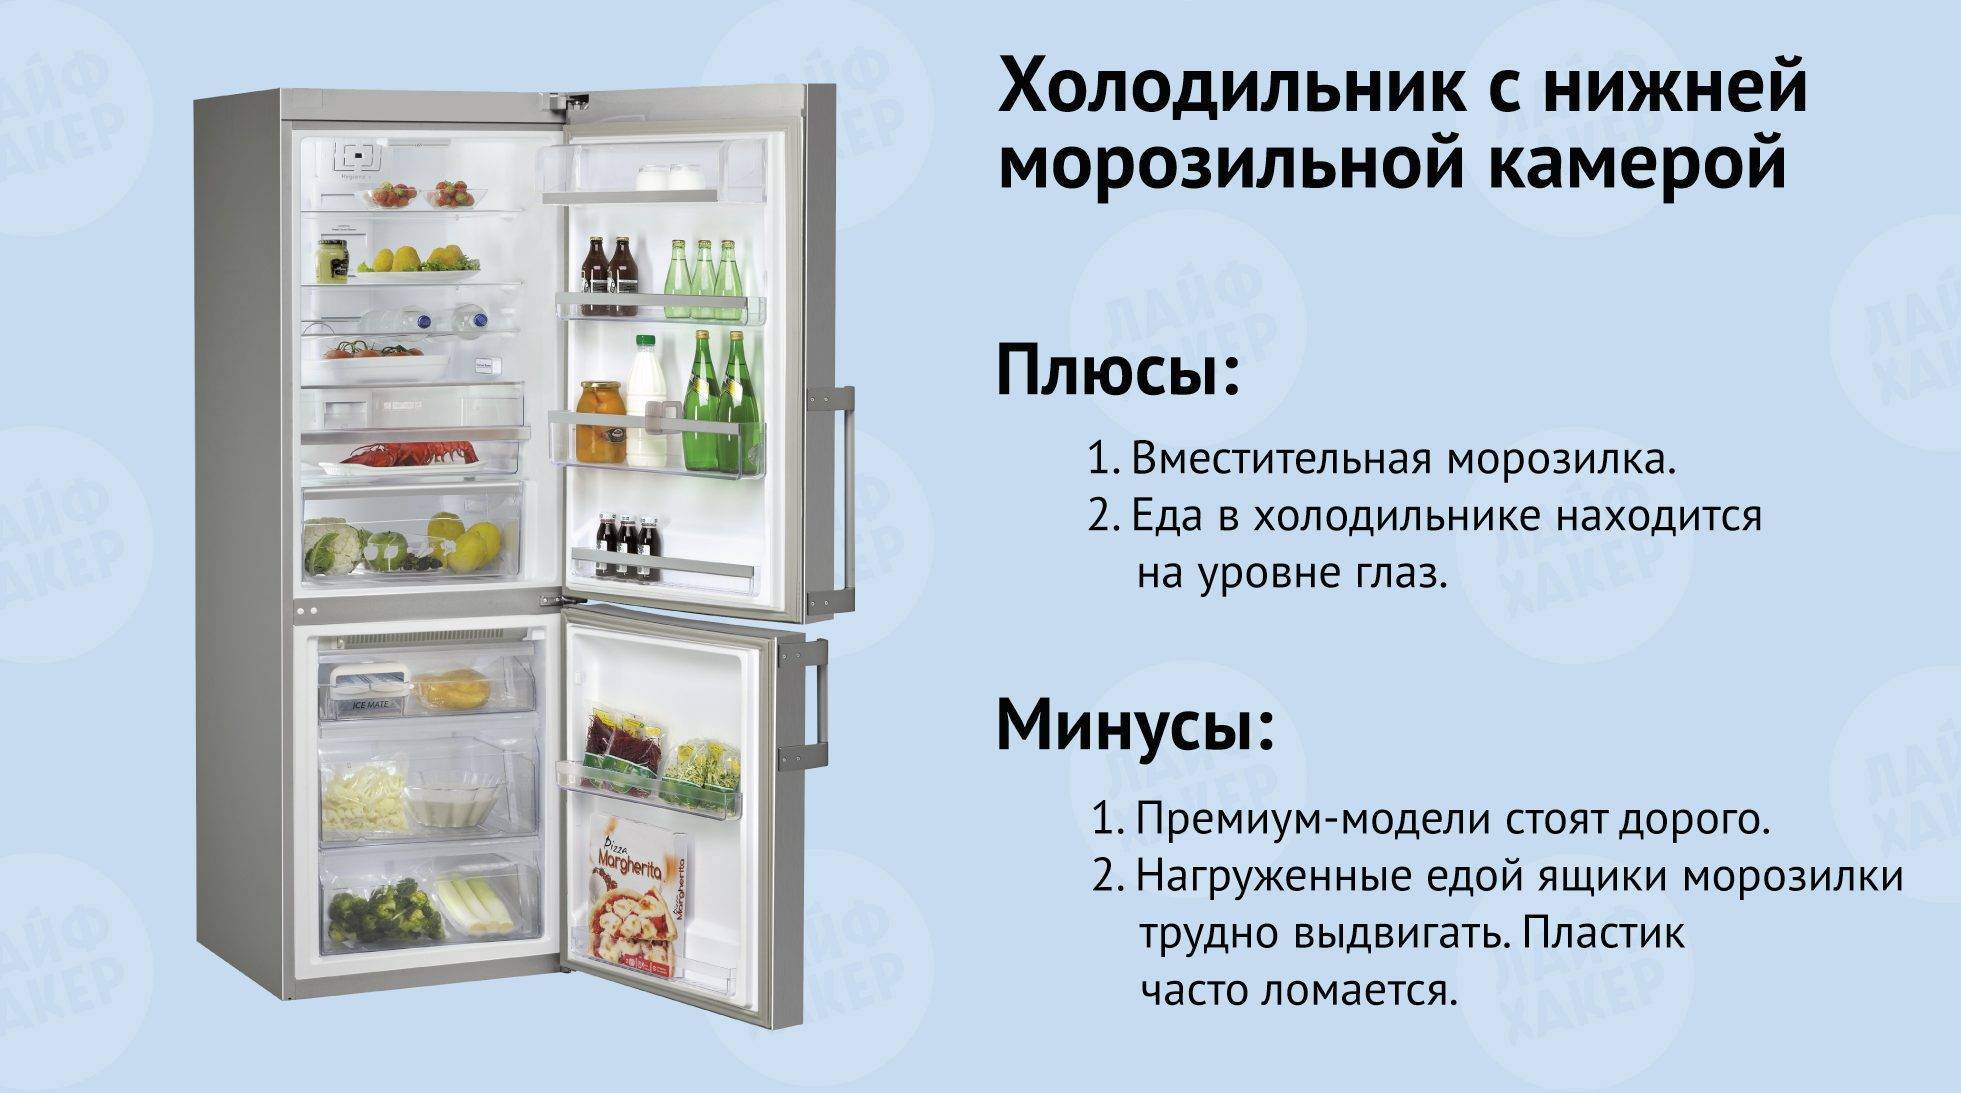 Какой холодильник лучше выбрать: капельный или ноу фрост?